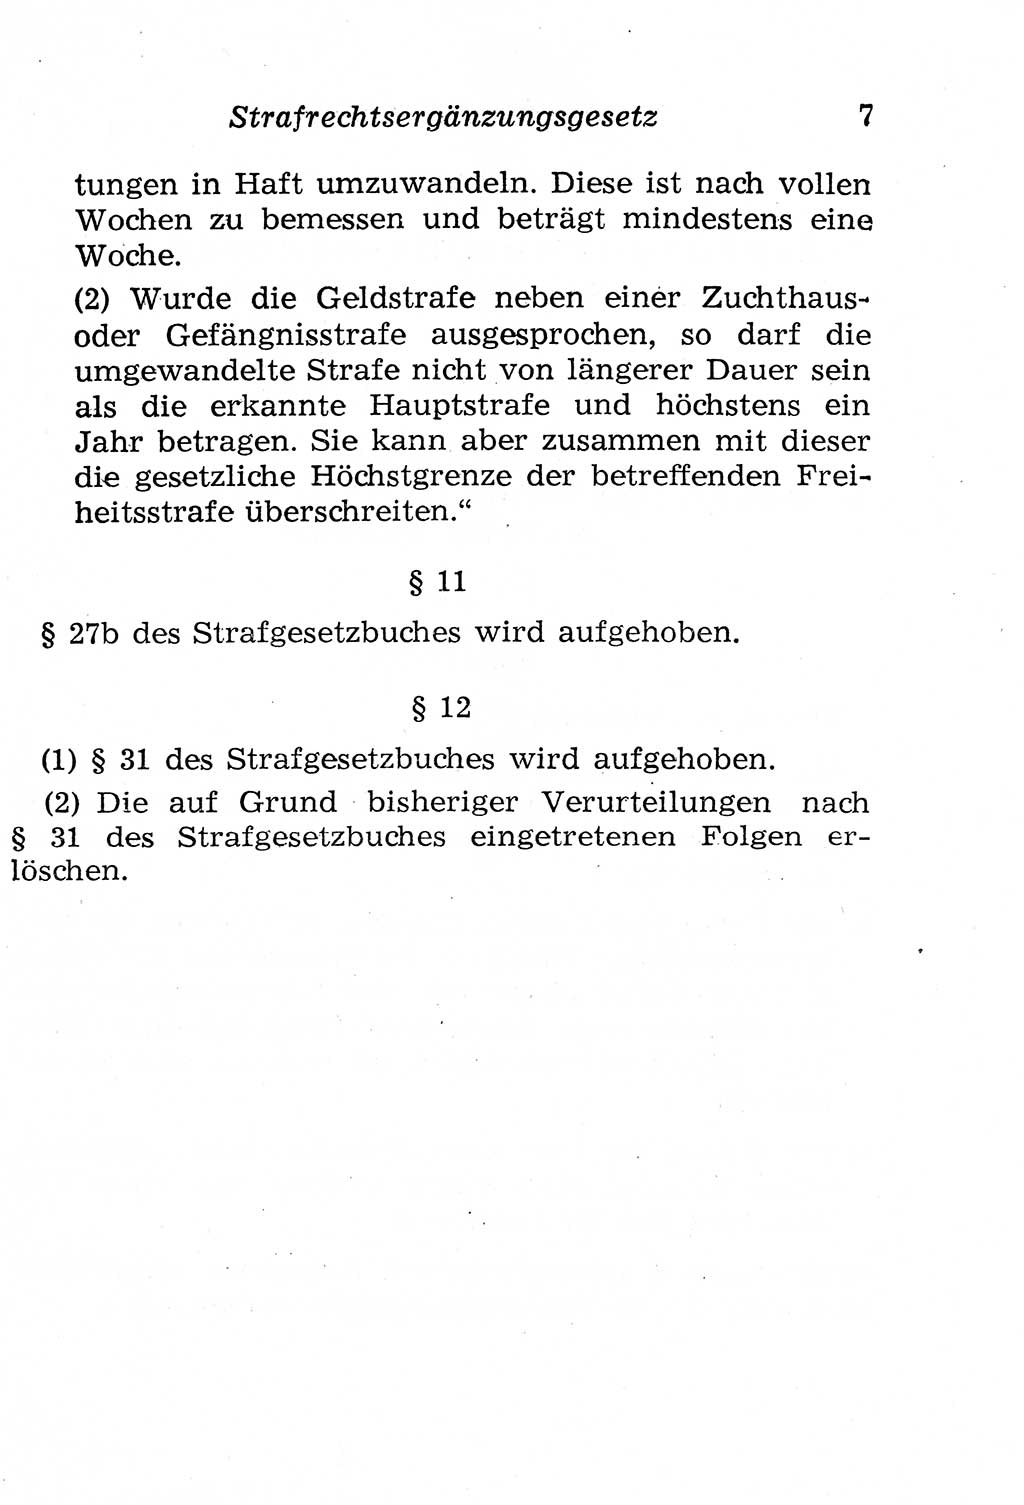 Strafgesetzbuch (StGB) und andere Strafgesetze [Deutsche Demokratische Republik (DDR)] 1958, Seite 7 (StGB Strafges. DDR 1958, S. 7)